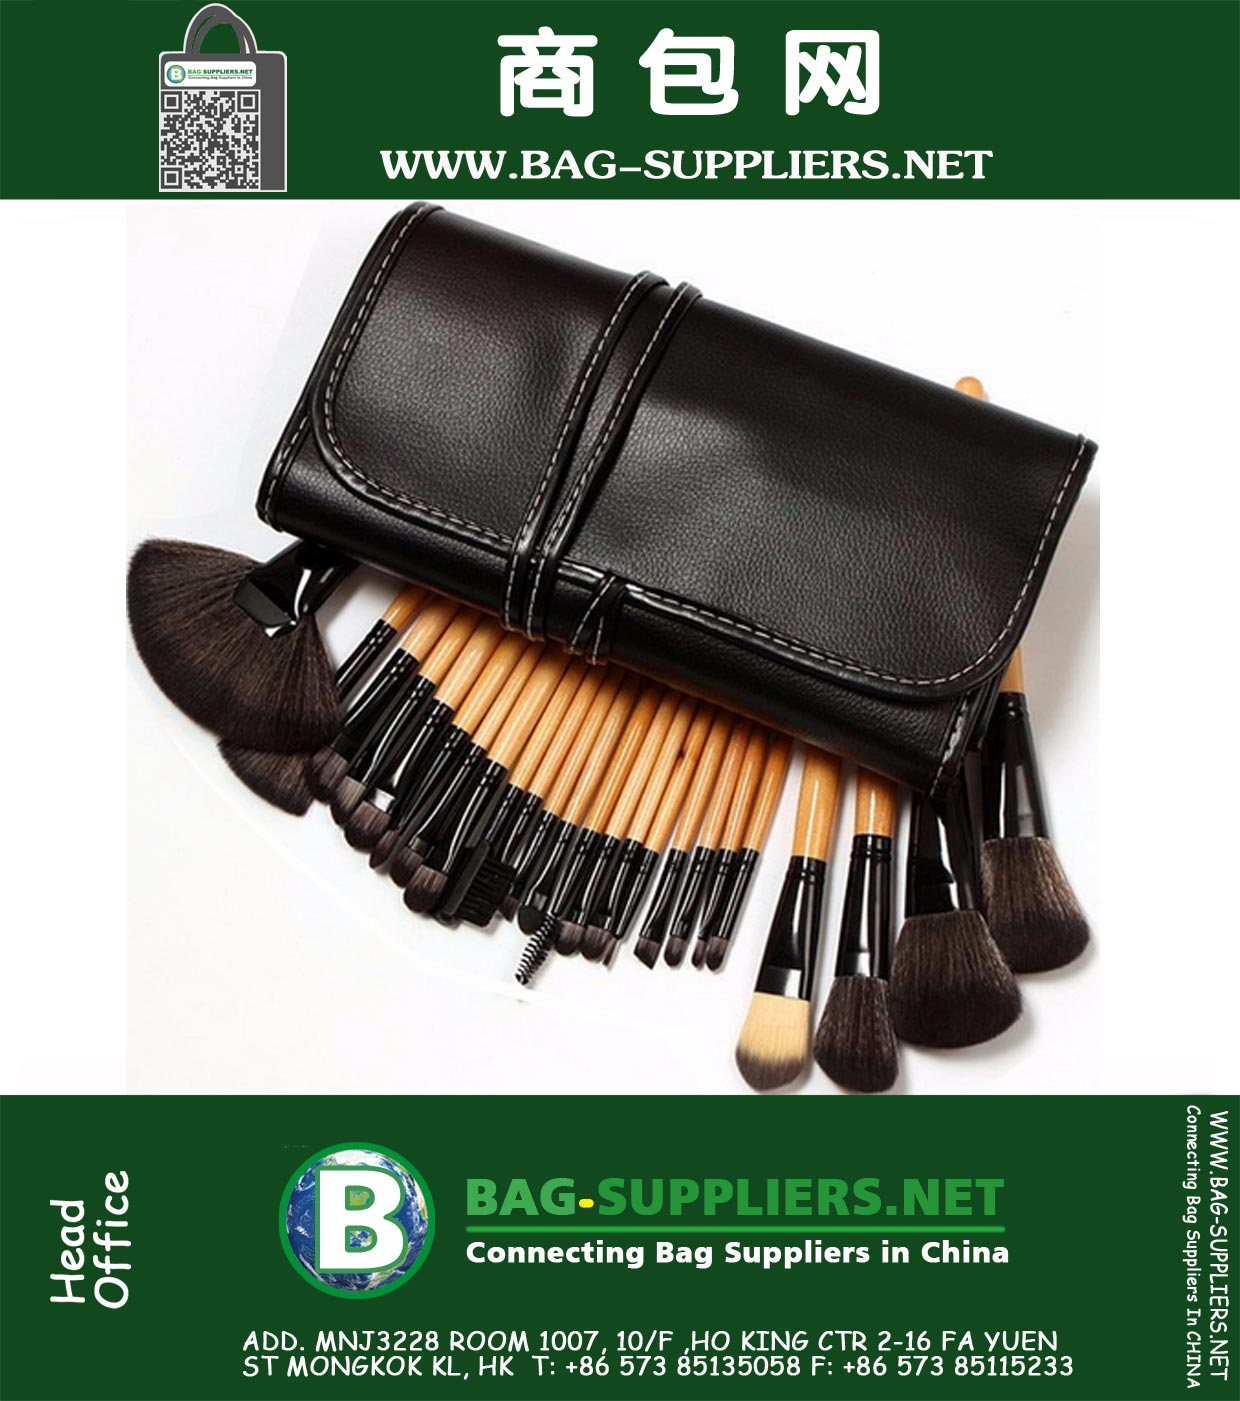 32pcs gesetzte Berufsverfassungs-Bürsten-weiche Kosmetik Addbeauty Make-up Pinsel Top-Qualität Up Tool Kit Tasche Tasche Make